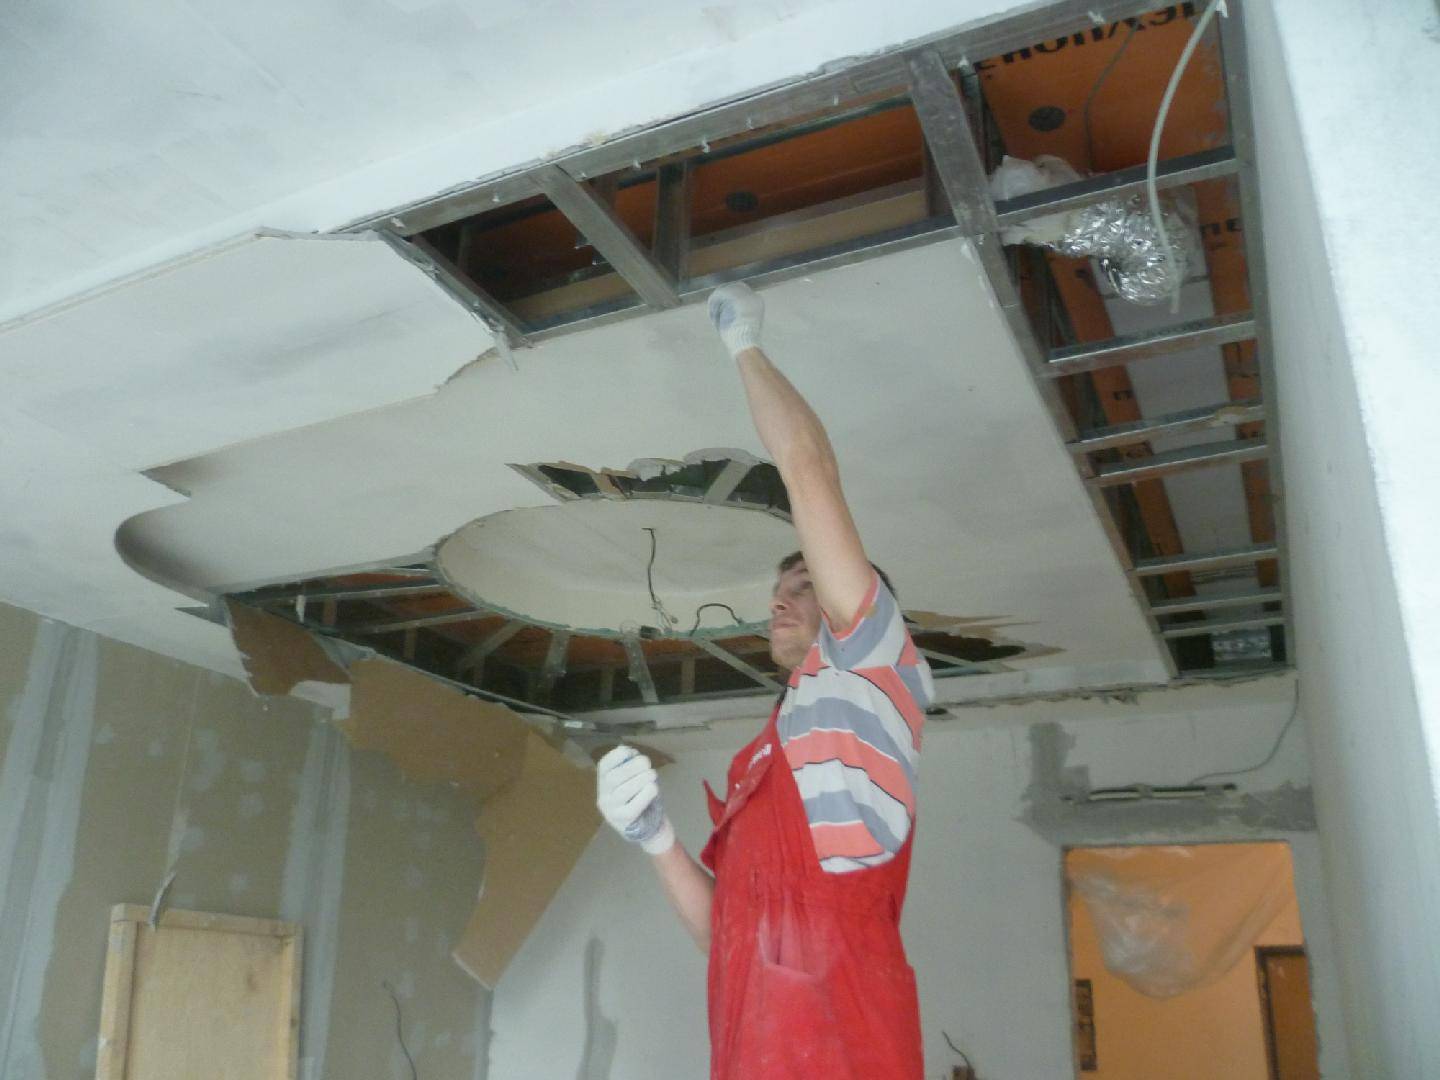 Как снять натяжной потолок своими руками и видео демонтажа